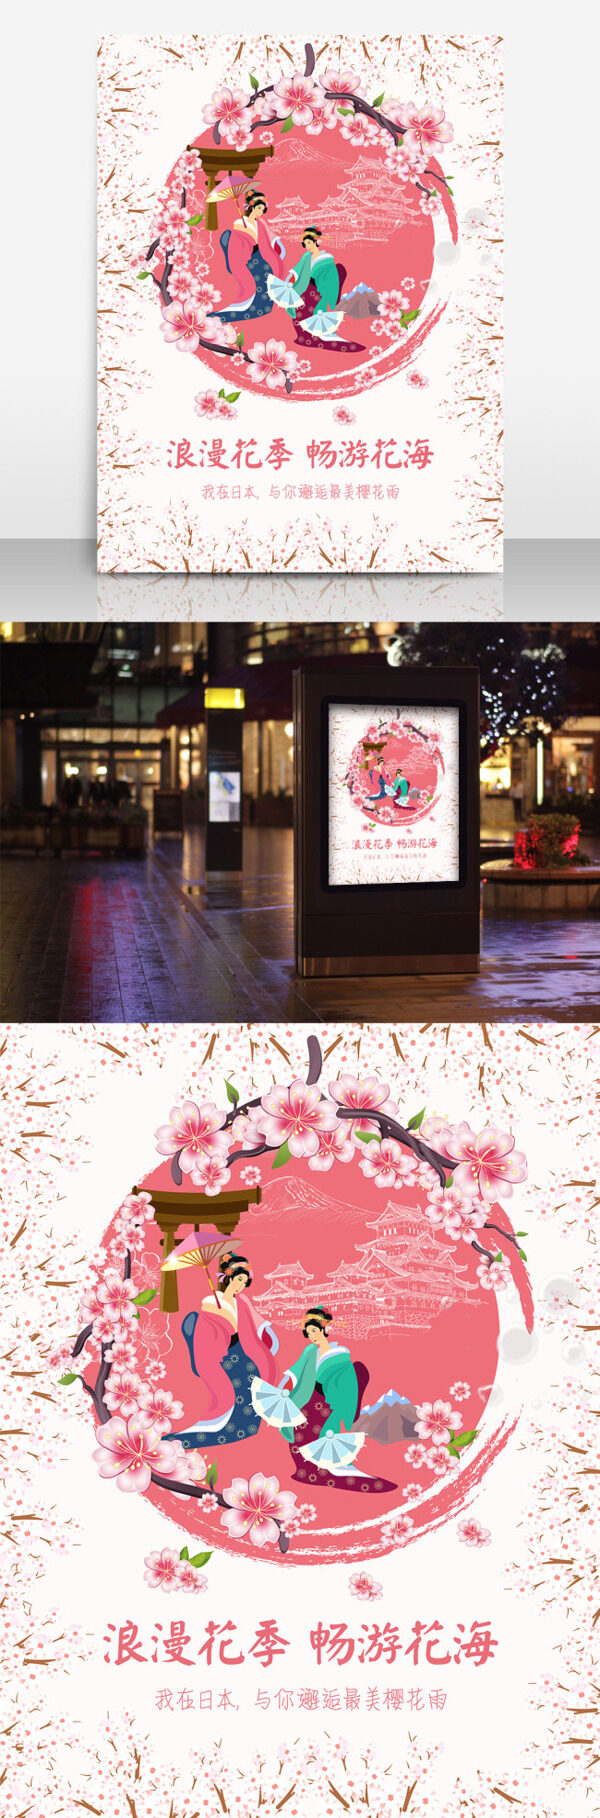 樱花季畅游日本旅游宣传海报